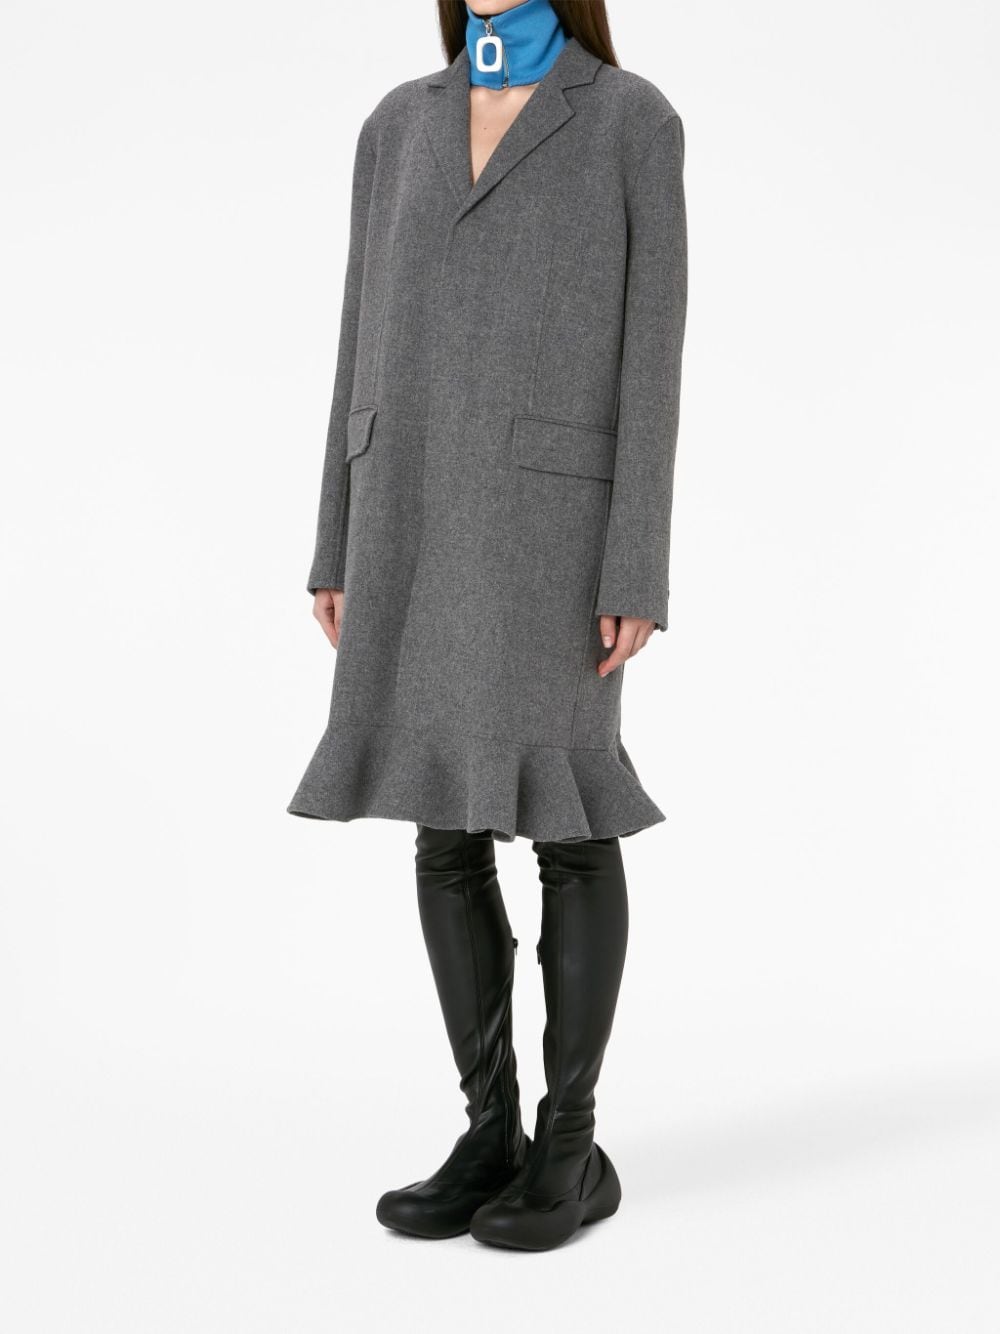 Stylish Women's Grey Wool Outerwear - FW23